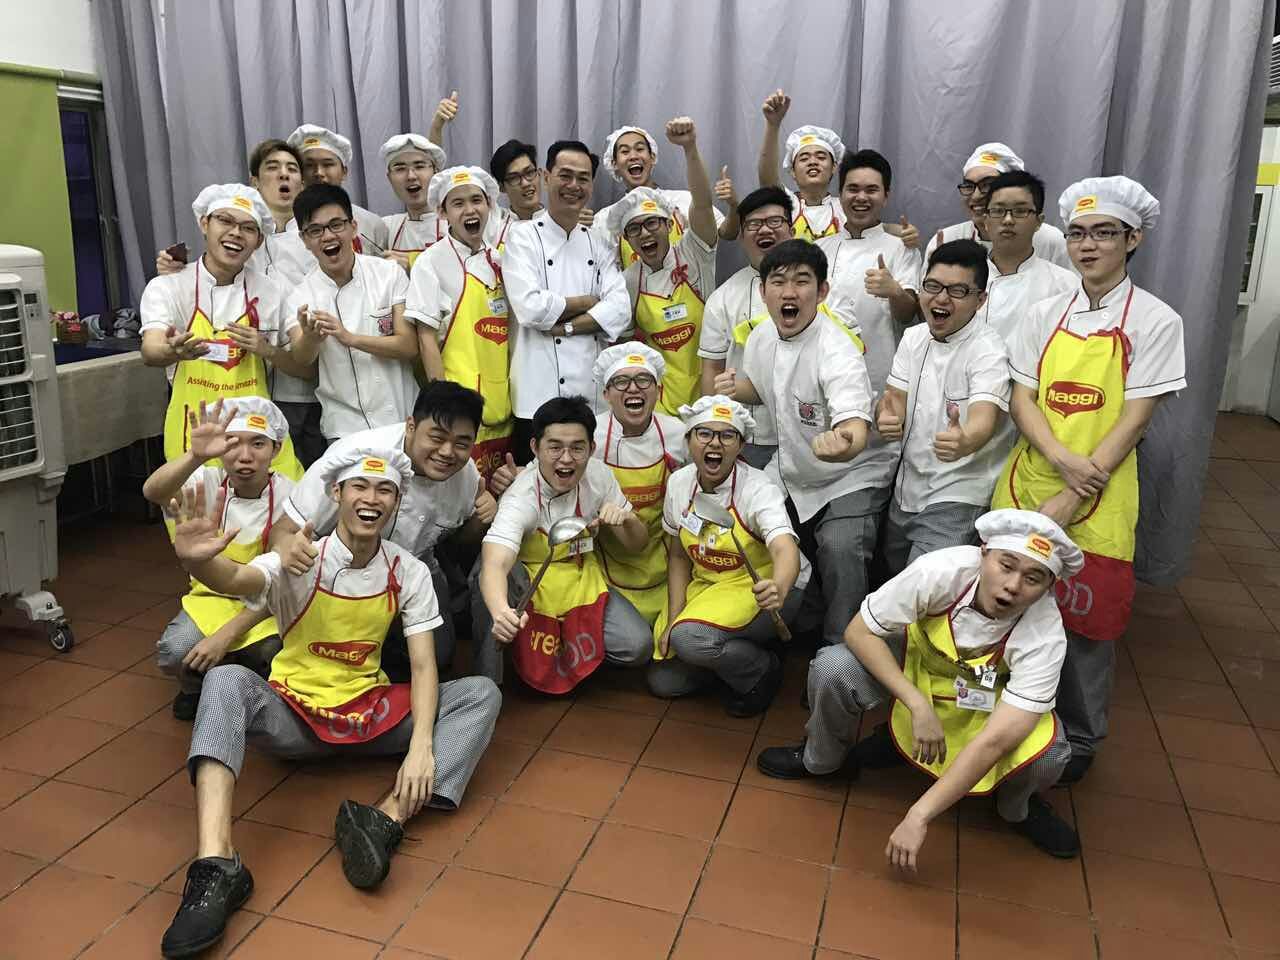  柔：【今日面谱】（10月14日刊）：马来语示范烹煮各族可吃的华人美食，胡嘉乐在TikTok走红